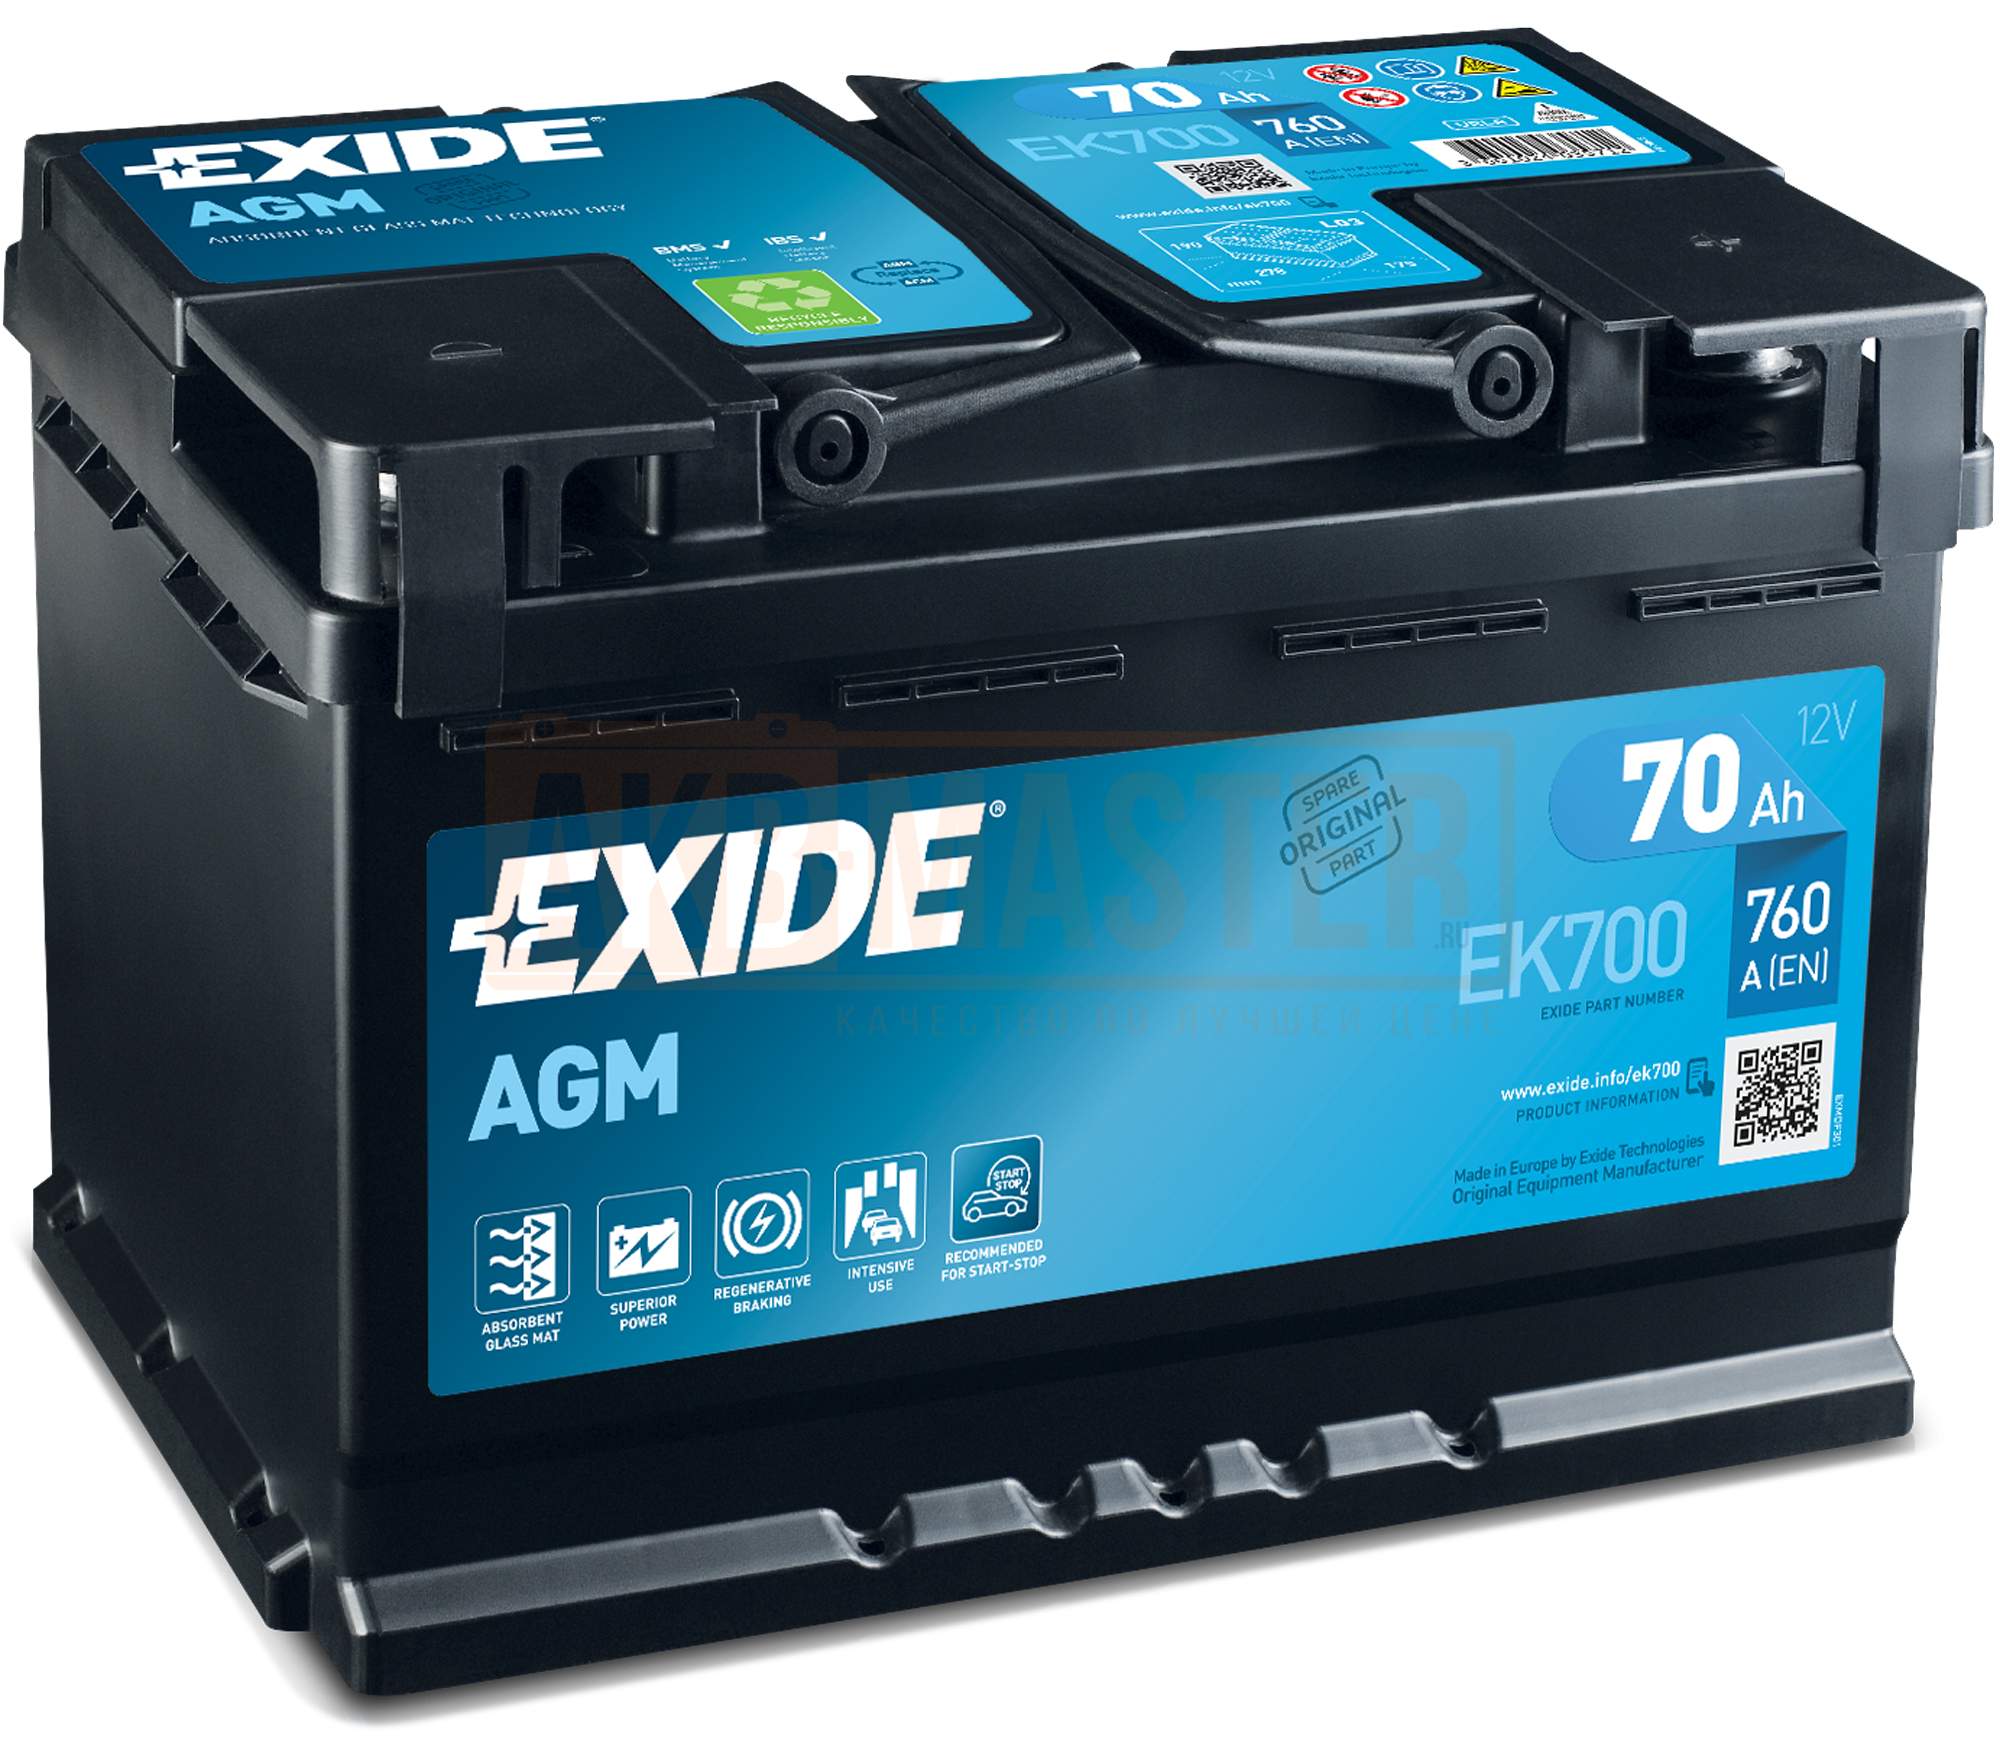 Exide el700 аккумулятор. Exide start-stop AGM ek700. Аккумулятор Exide Excell eb604. Аккумулятор Exide AGM 70ah.